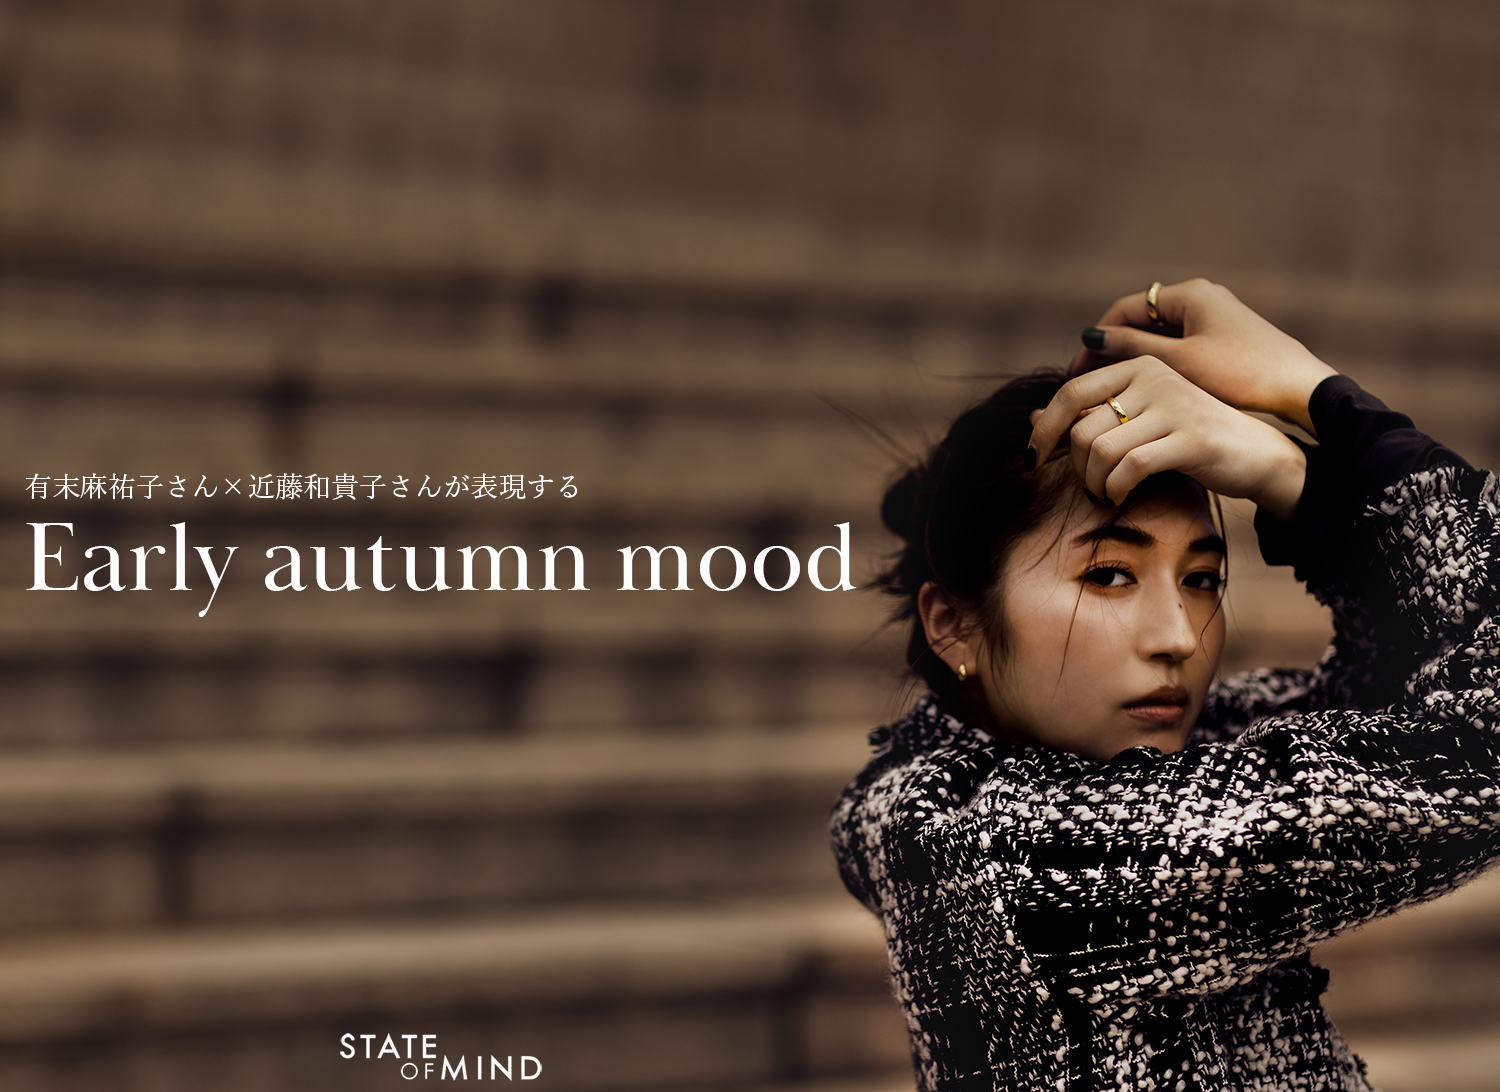 有末麻祐子さん×近藤和貴子さんが表現する Early autumn mood